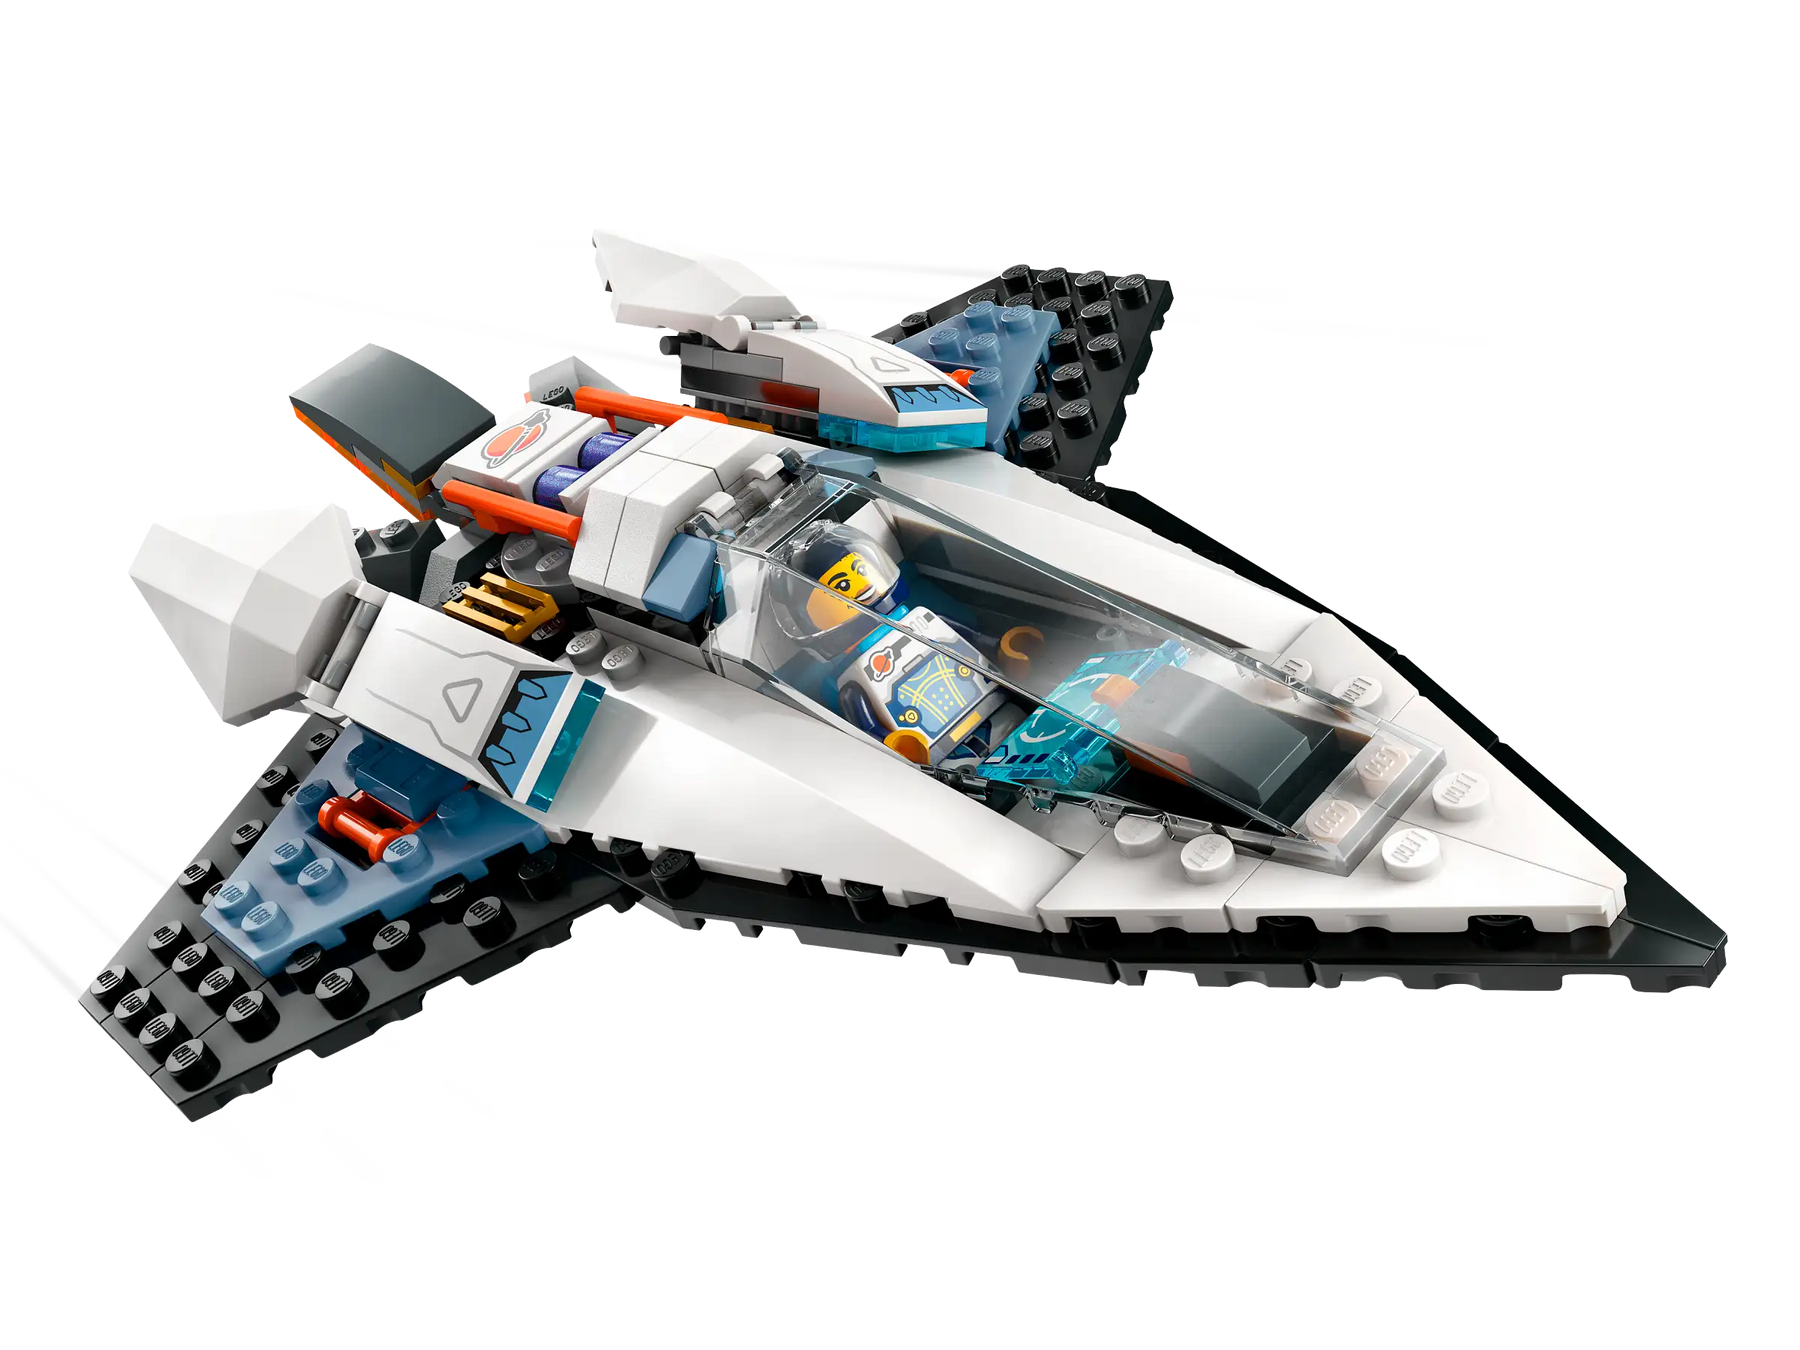 LEGO City 60430 Tähtienvälisten Lentojen Avaruusalus